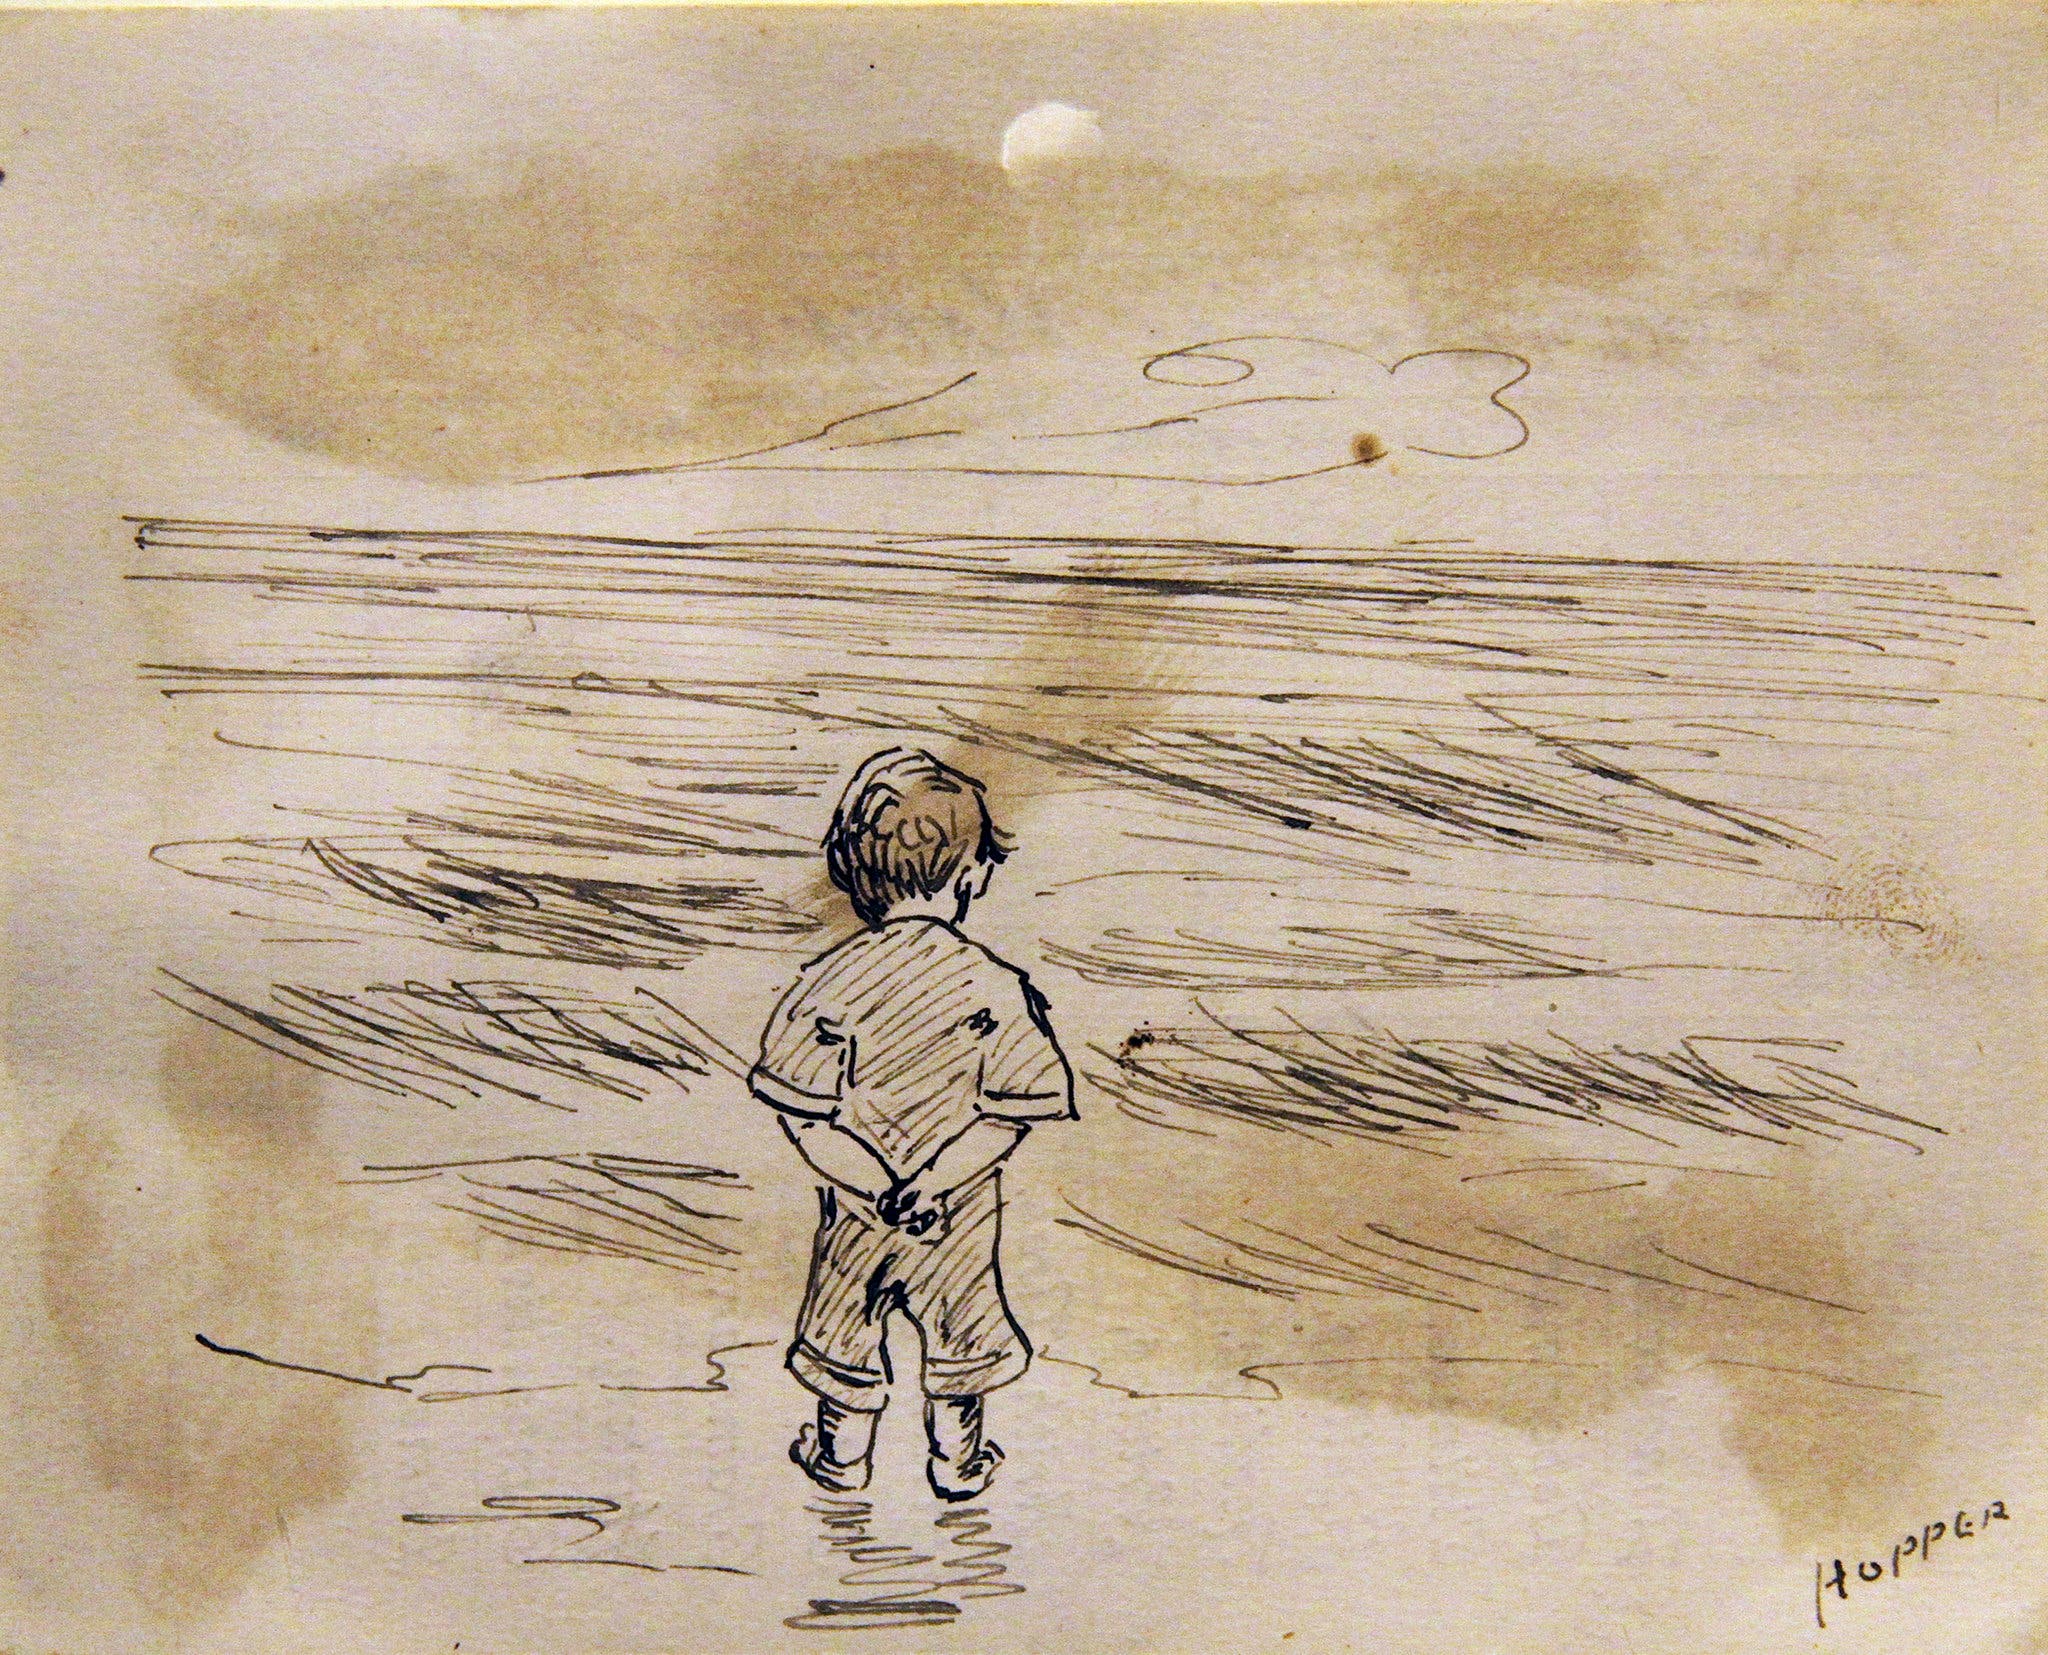 Kleiner Junge am Meer by Edward Hopper - 1891 - 11,43 x 8,89 cm Private Sammlung